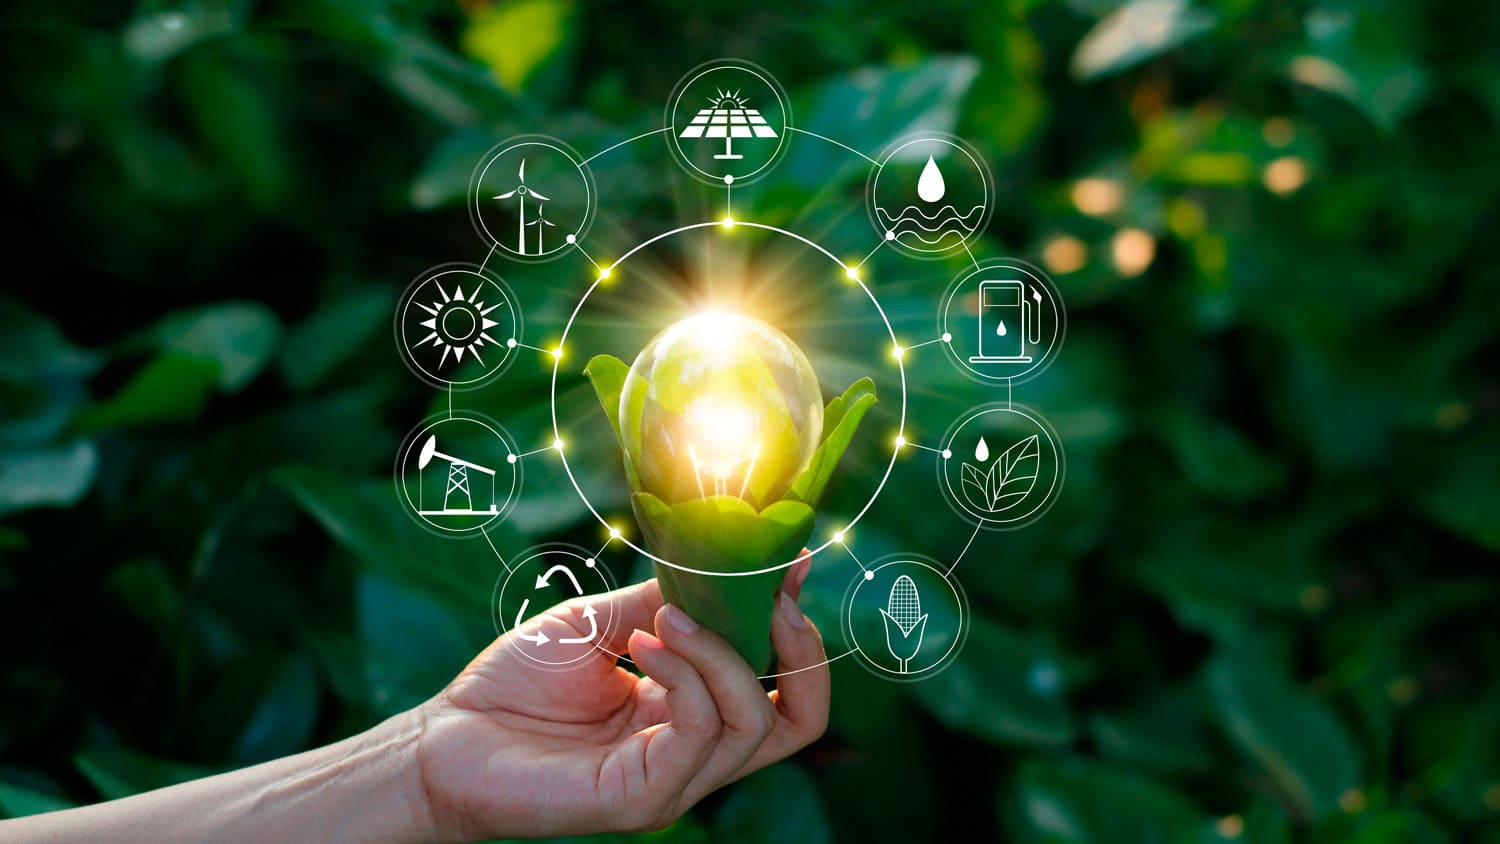 Manos sosteniendo una ampolleta iluminada con base de plantas. A su alrededor hay iconos de elementos que se relacionan a la sostenibilidad como energía mediante recursos naturales.